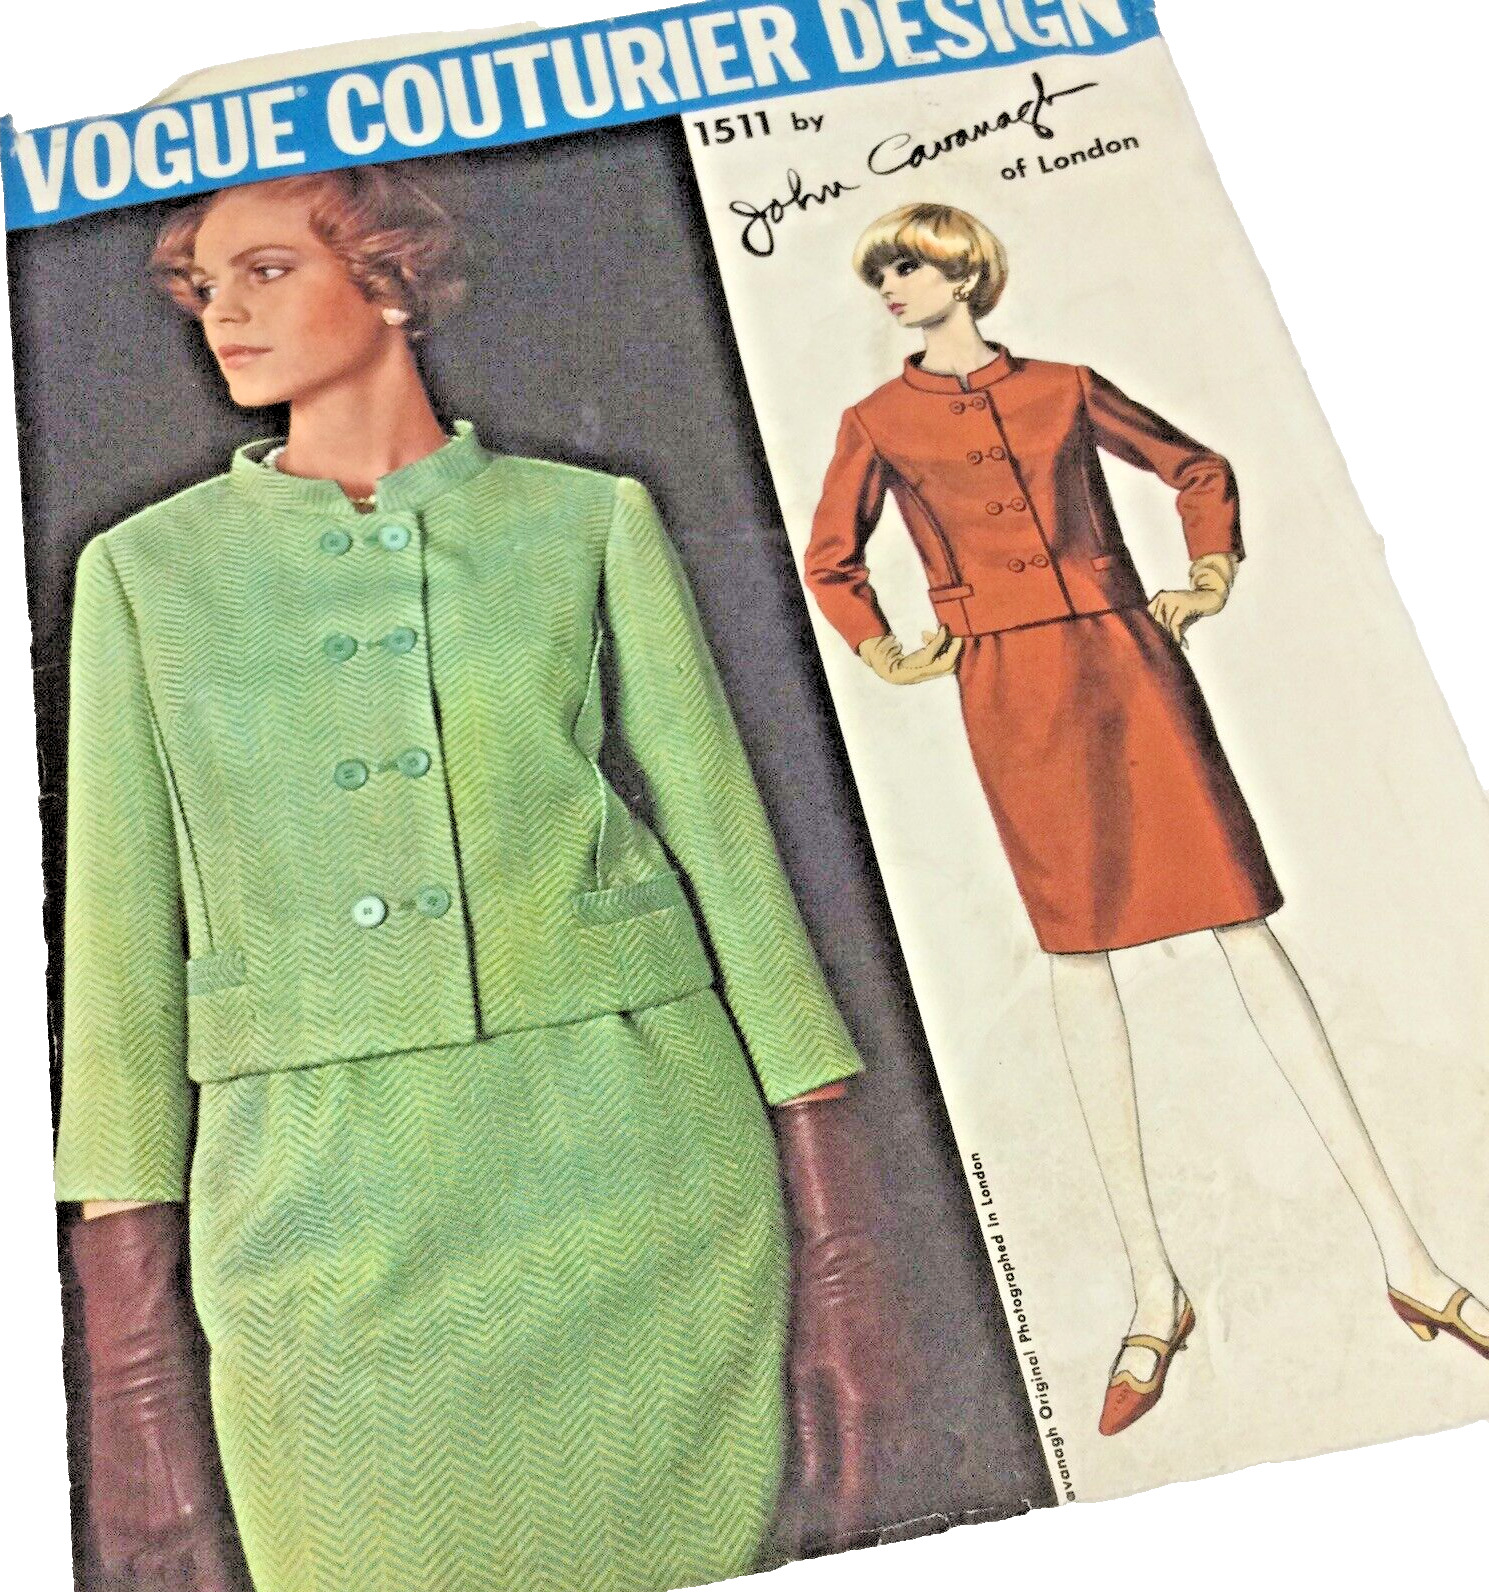 Vogue Couturier Design Pattern John Cavanagh #1511 Suit Skirt Sz 10 Complete VTG